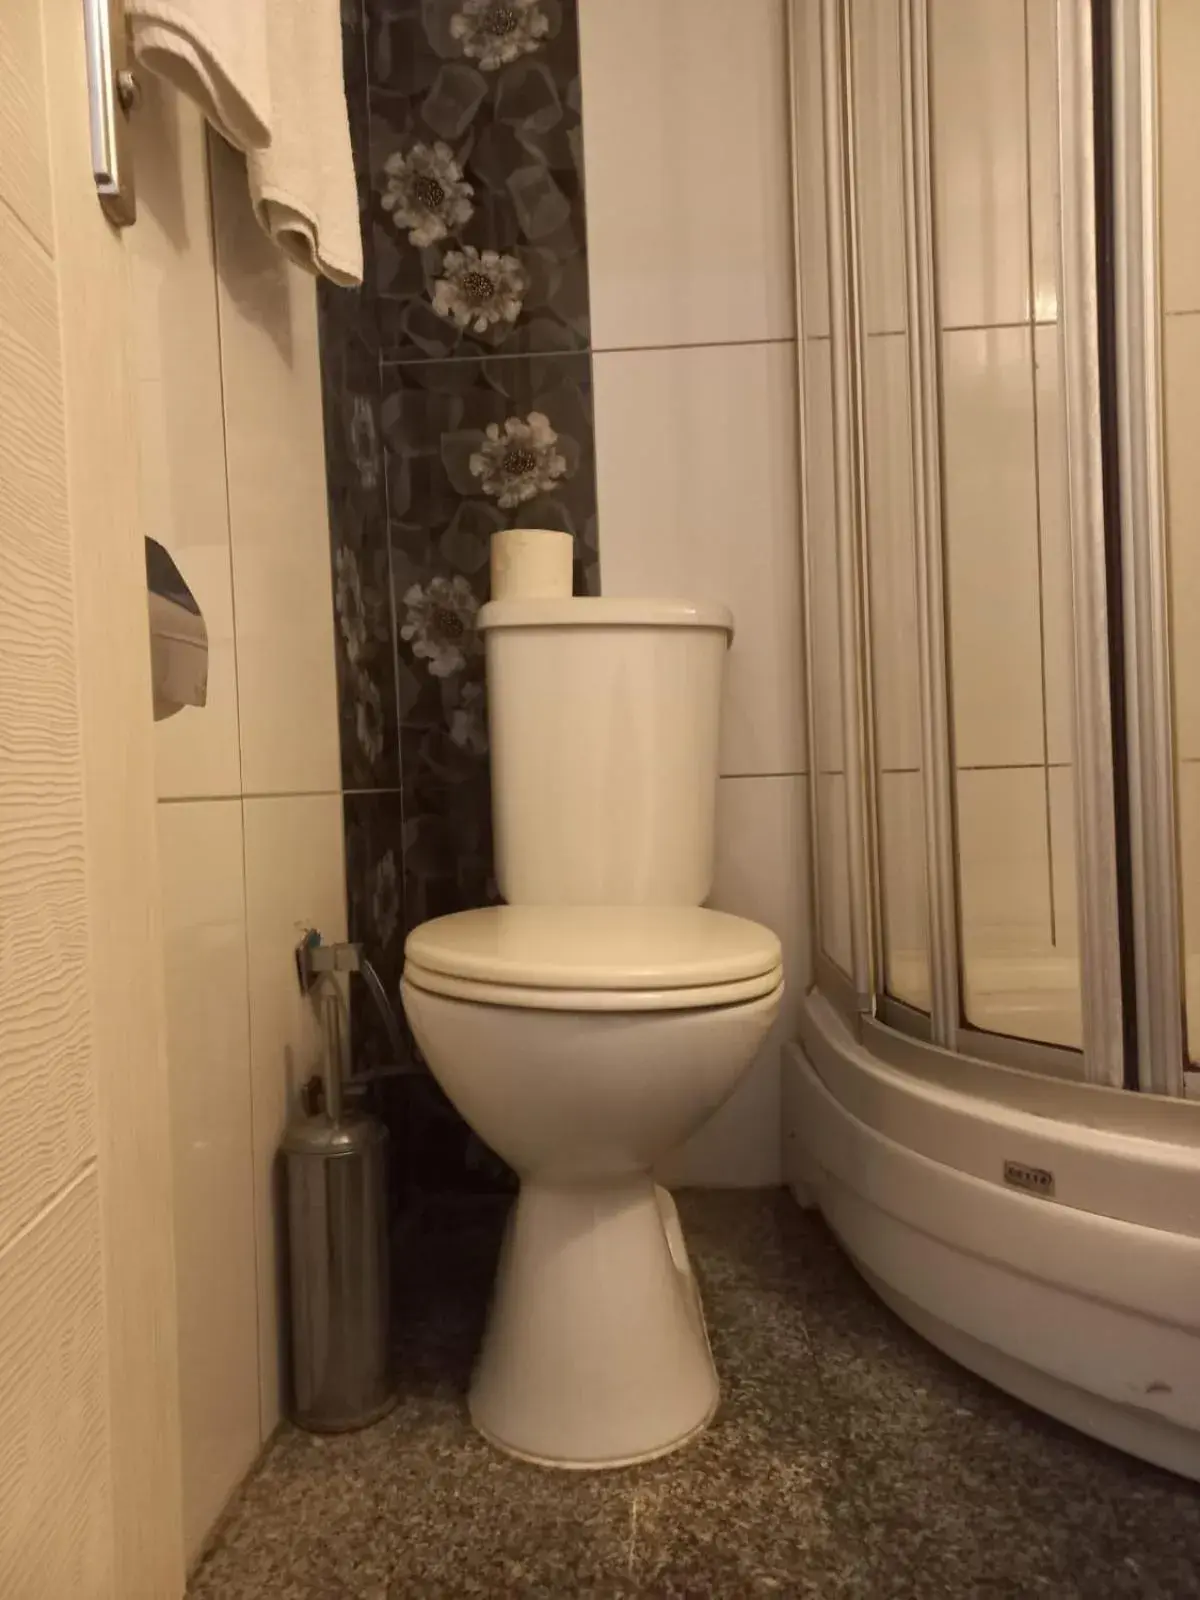 Toilet, Bathroom in Atalla Hotel